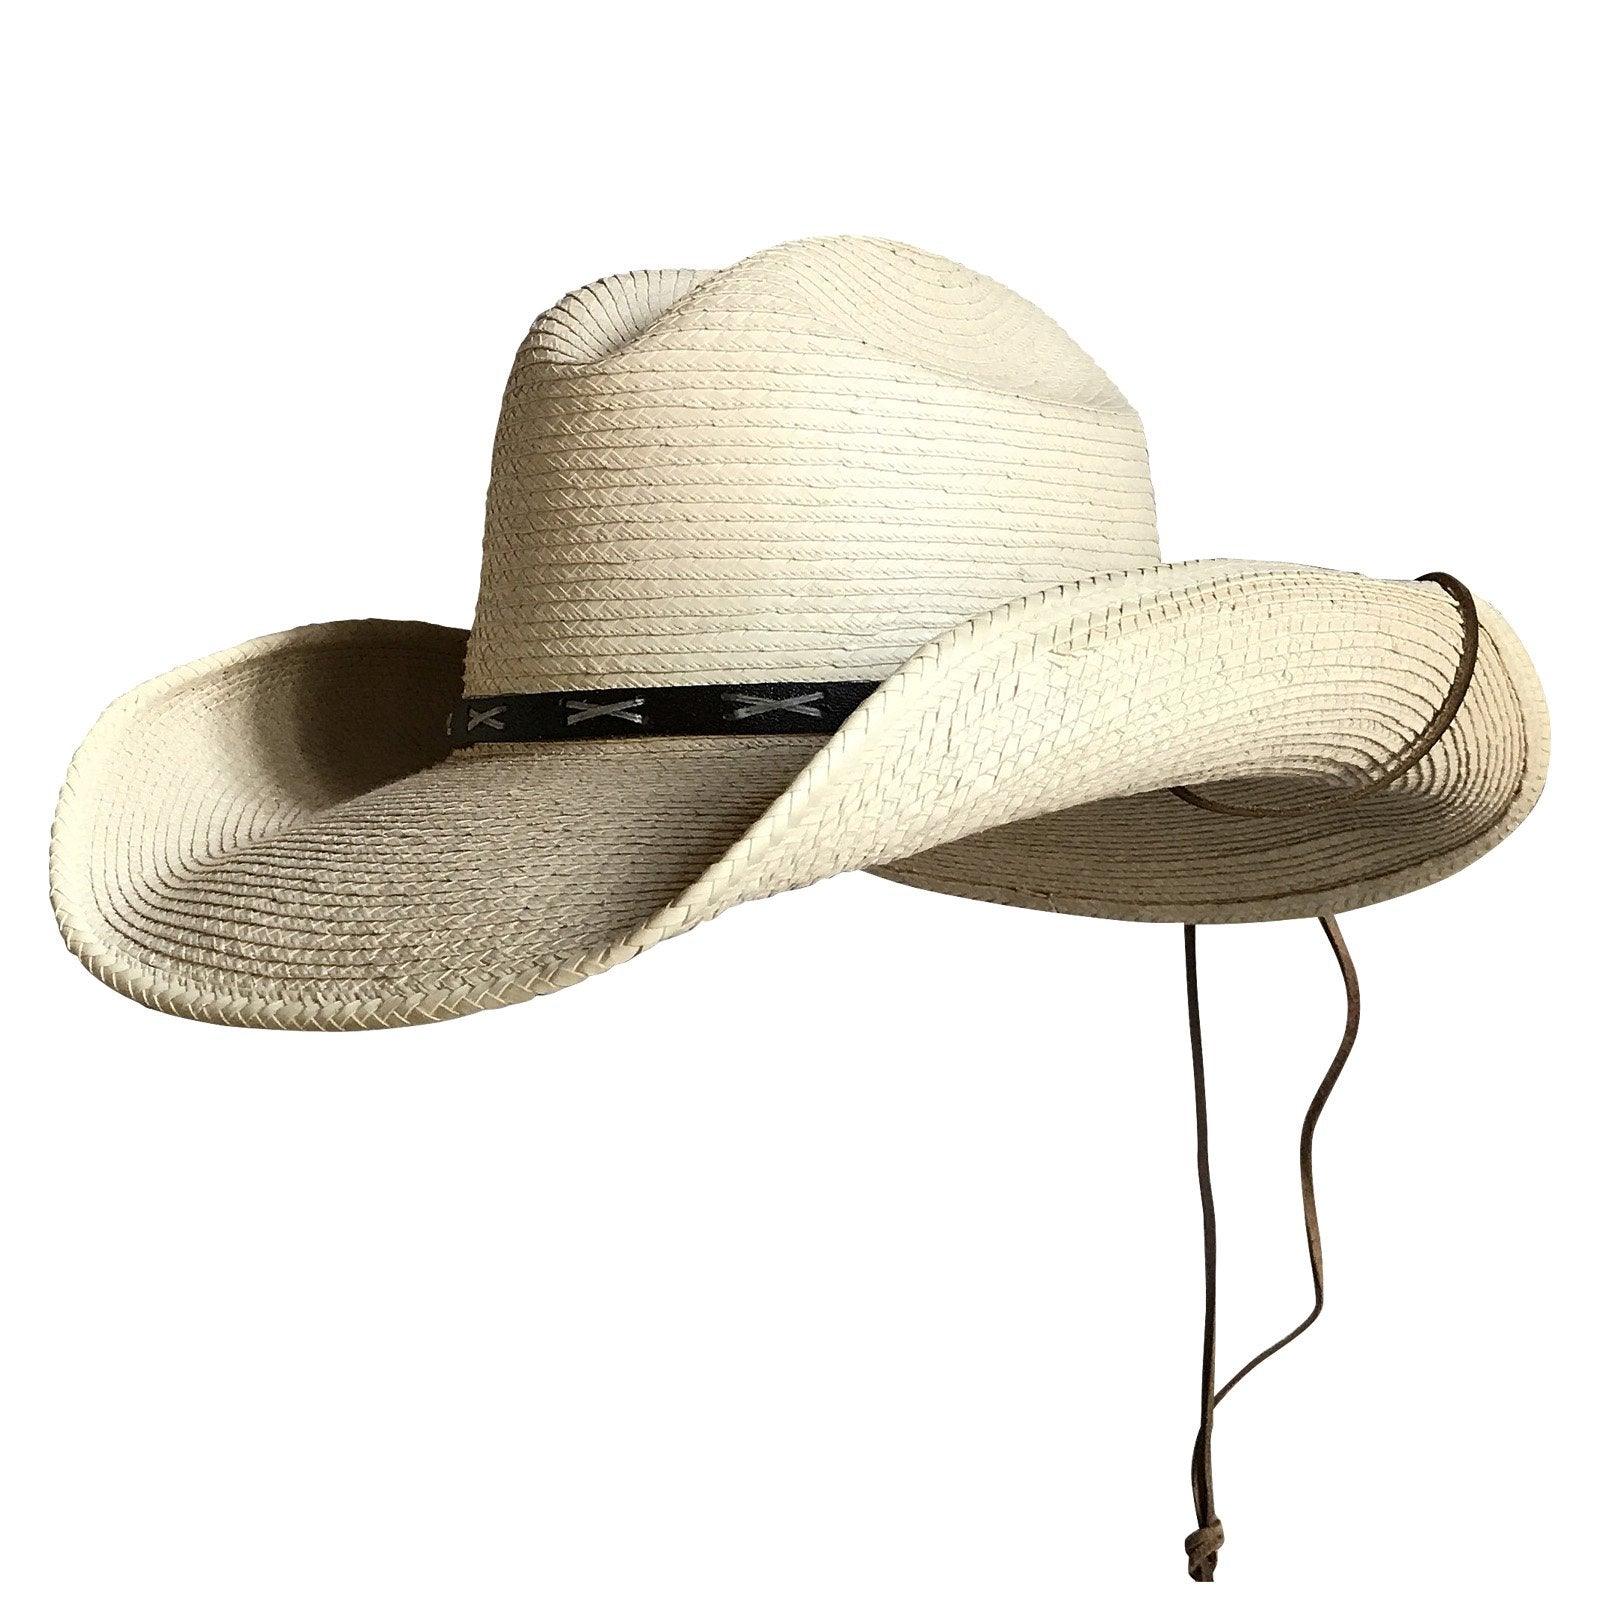 Straw Palm X Band Rolled Western Cowboy Hat - Flyclothing LLC